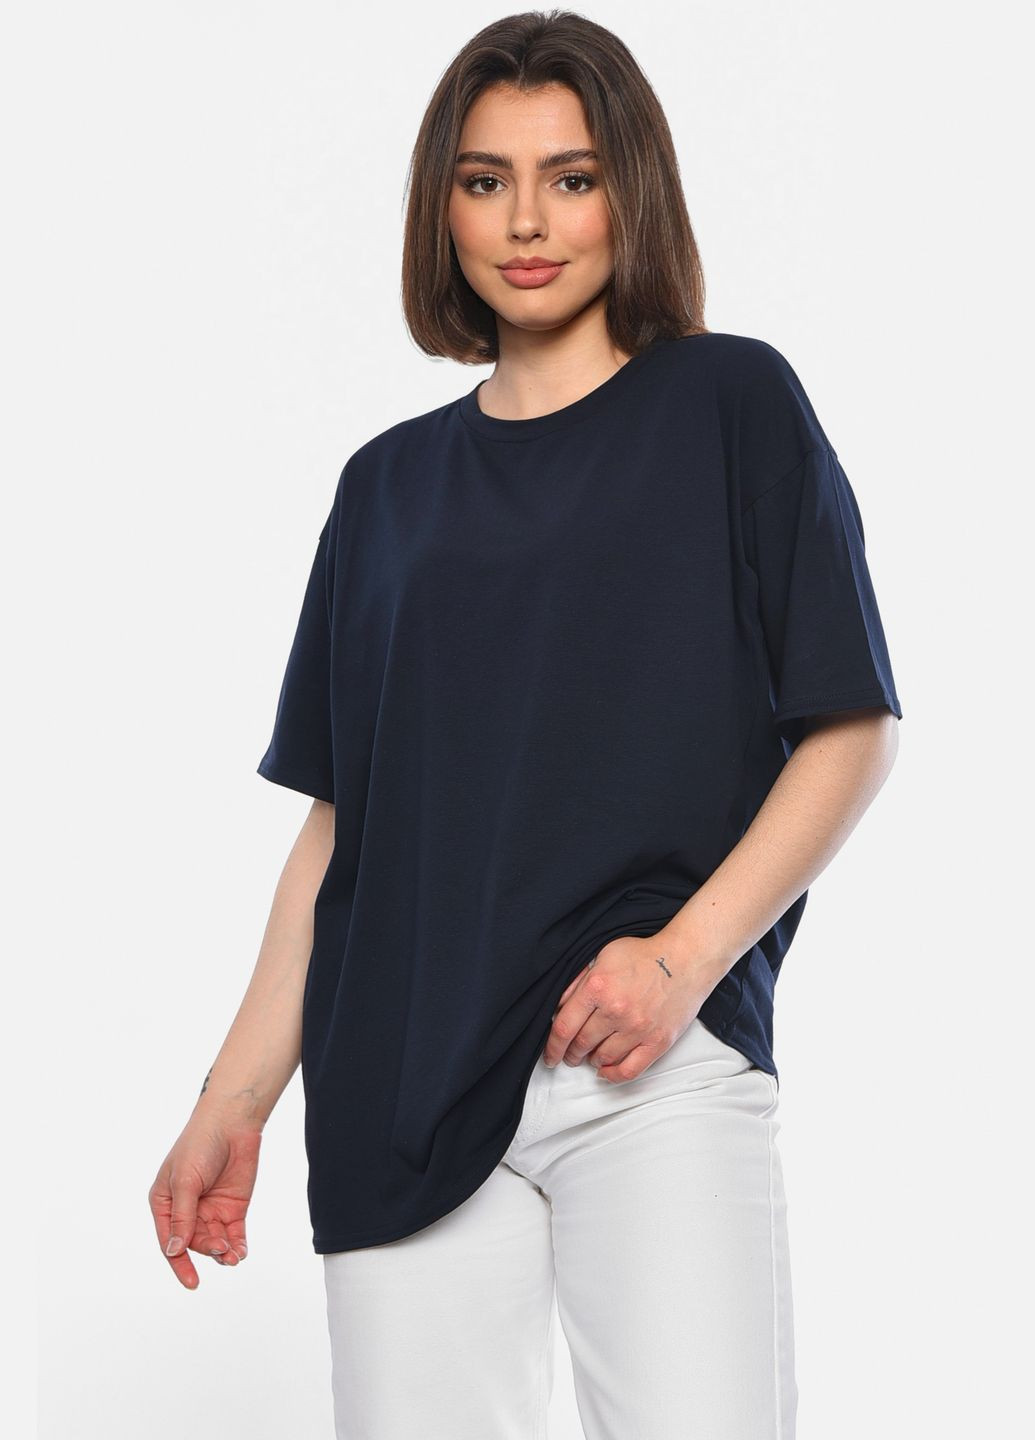 Темно-синяя летняя футболка женская полубатальная темно-синего цвета Let's Shop